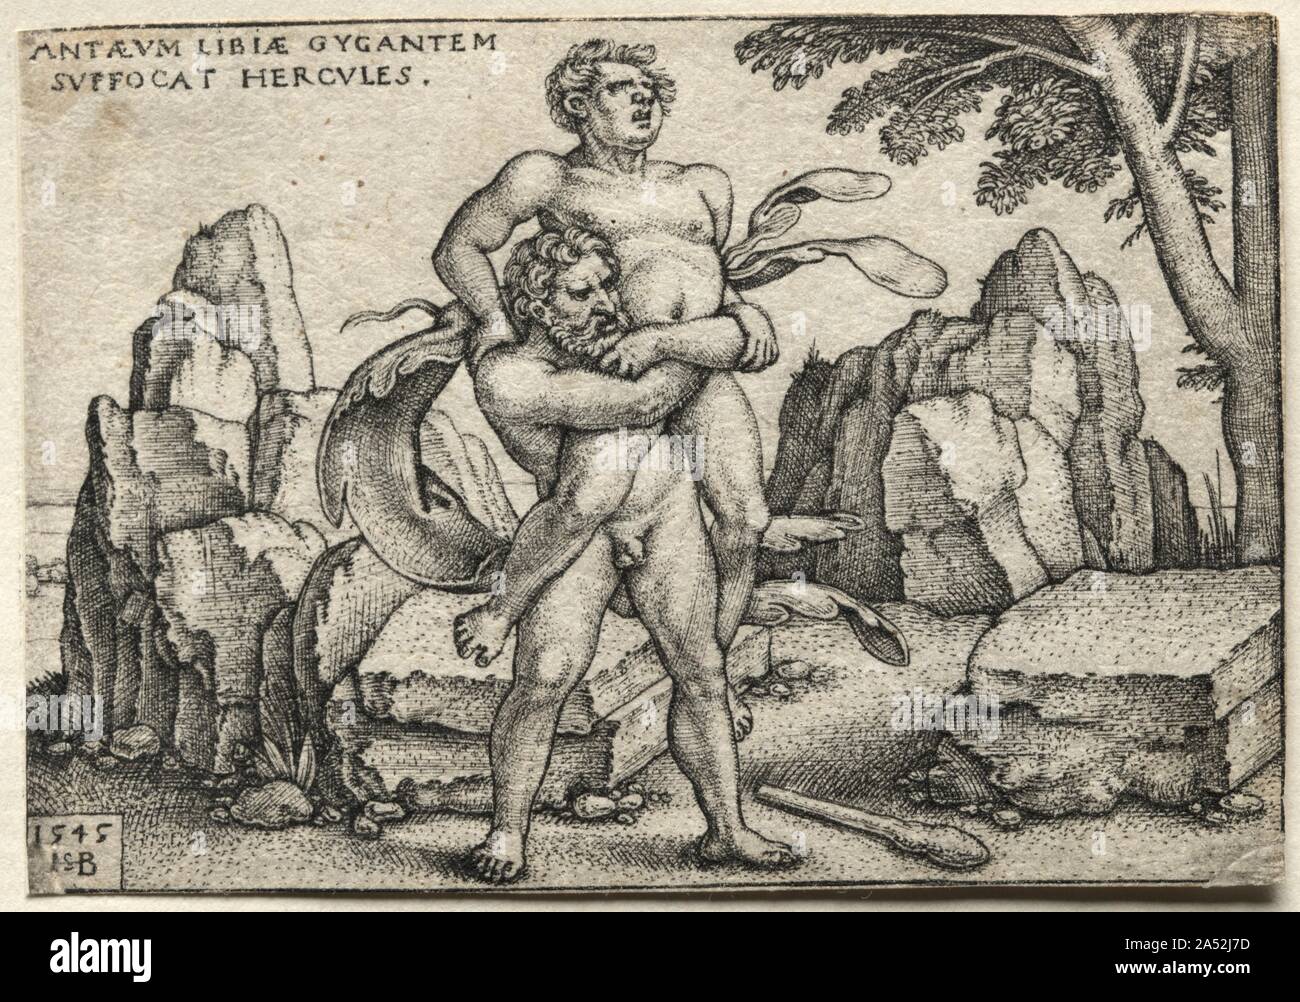 Die Arbeiten des Herkules: Herkules Crushing Antaios, 1545. Die riesen Antaeus war unbesiegbar, solange er die Erde, die ihm seine überwältigende Stärke berührt. In dieser Szene, Hercules geschickt wuchtet Antaeus vom Boden zu schwächen und ihn zerquetschen. Diese Geschichte war vor allem während der Renaissance, als es war, als eine Allegorie auf die moralische Stärke triumphiant über irdischen Wünschen wahrgenommen. Beham war einer von mehreren deutschen Grafiker bezeichnet heute als den "Kleinen Meister." Sie Ihre künstlerischen Fähigkeiten durch Gravur bemerkenswert kleine Ausdrucke festgelegt, ansprechend zu Sammler fa Stockfoto